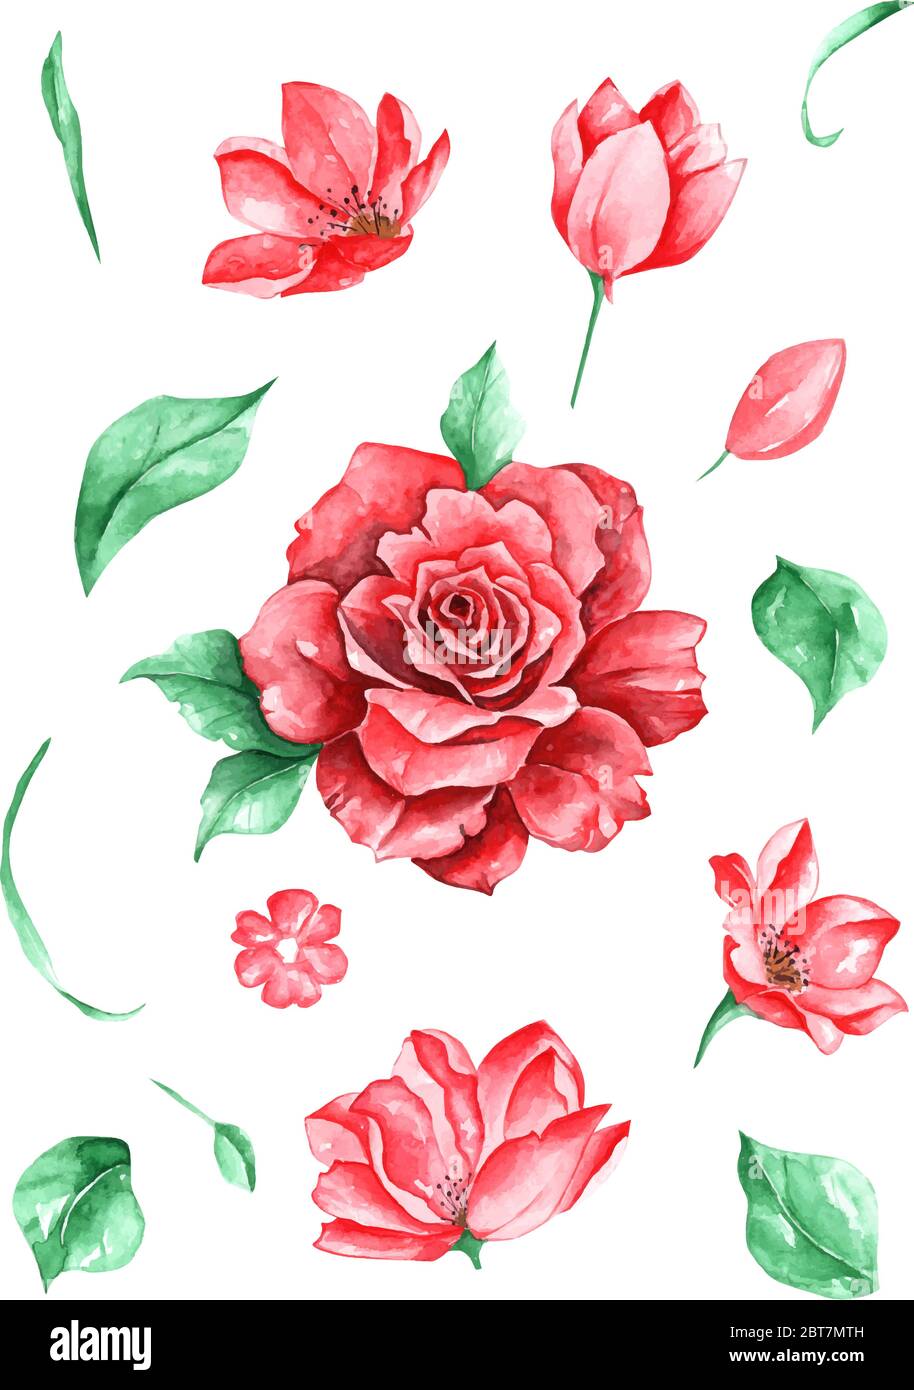 Ensemble de fleurs roses et feuilles vecteur dessin et peinture par aquarelle sur fond blanc Illustration de Vecteur